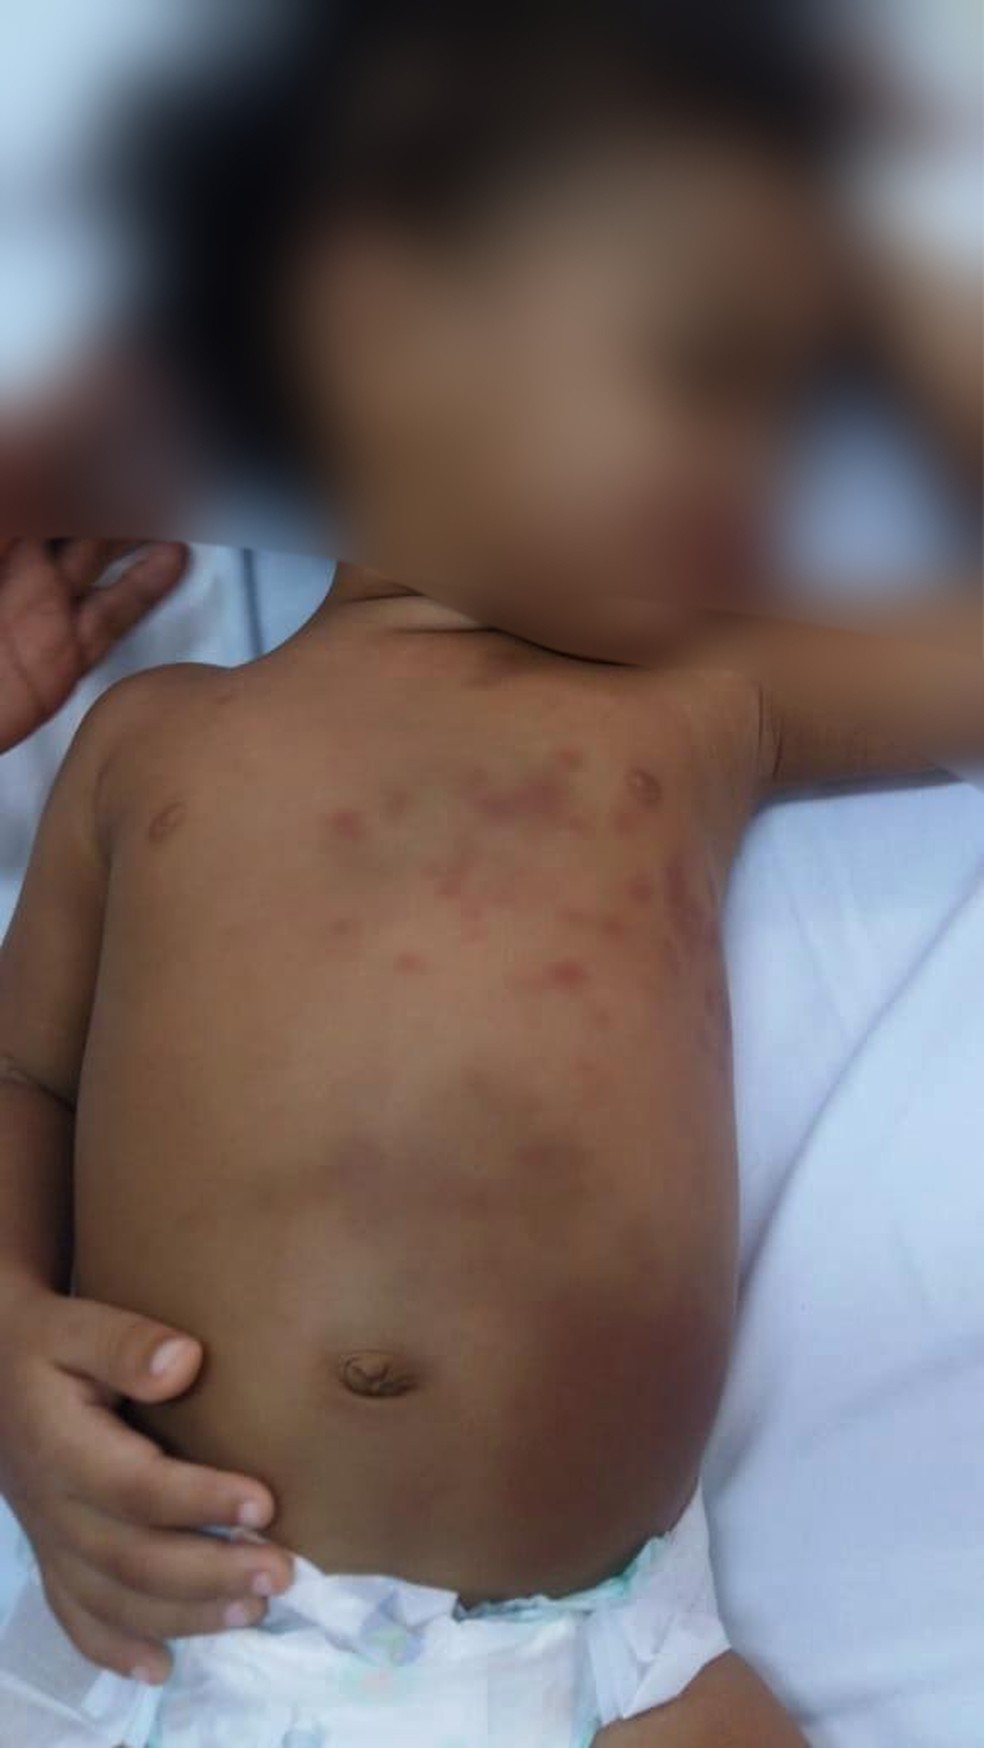 Menina de dois anos deu entrada no Hospital de Presidente Dutra, no Maranhão, após ser espancada pela mãe. — Foto: Divulgação/Polícia Civil